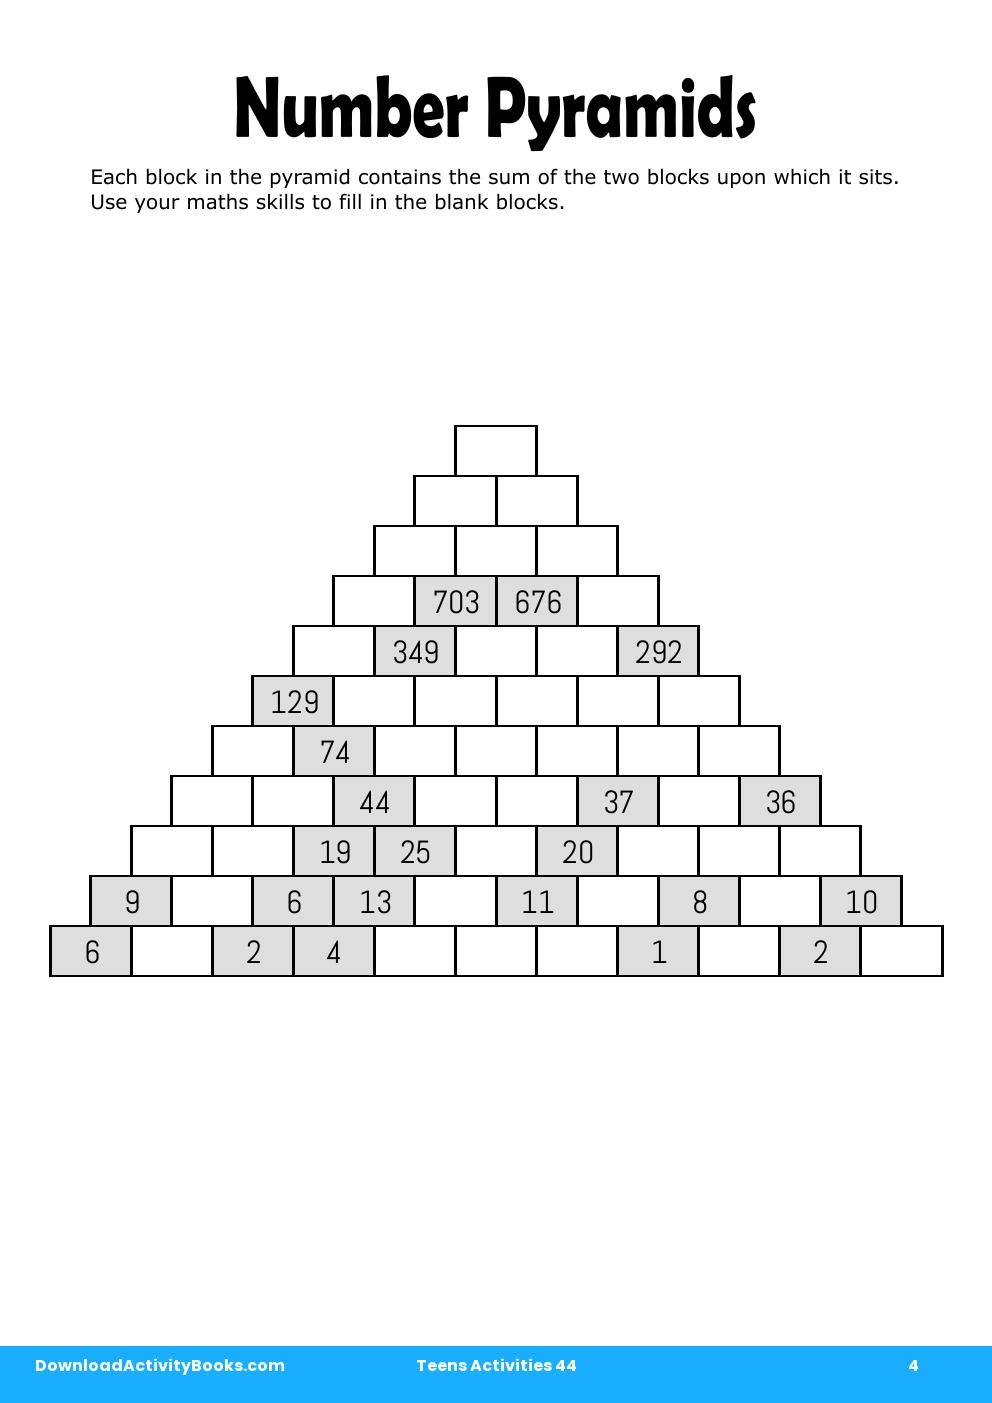 Number Pyramids in Teens Activities 44